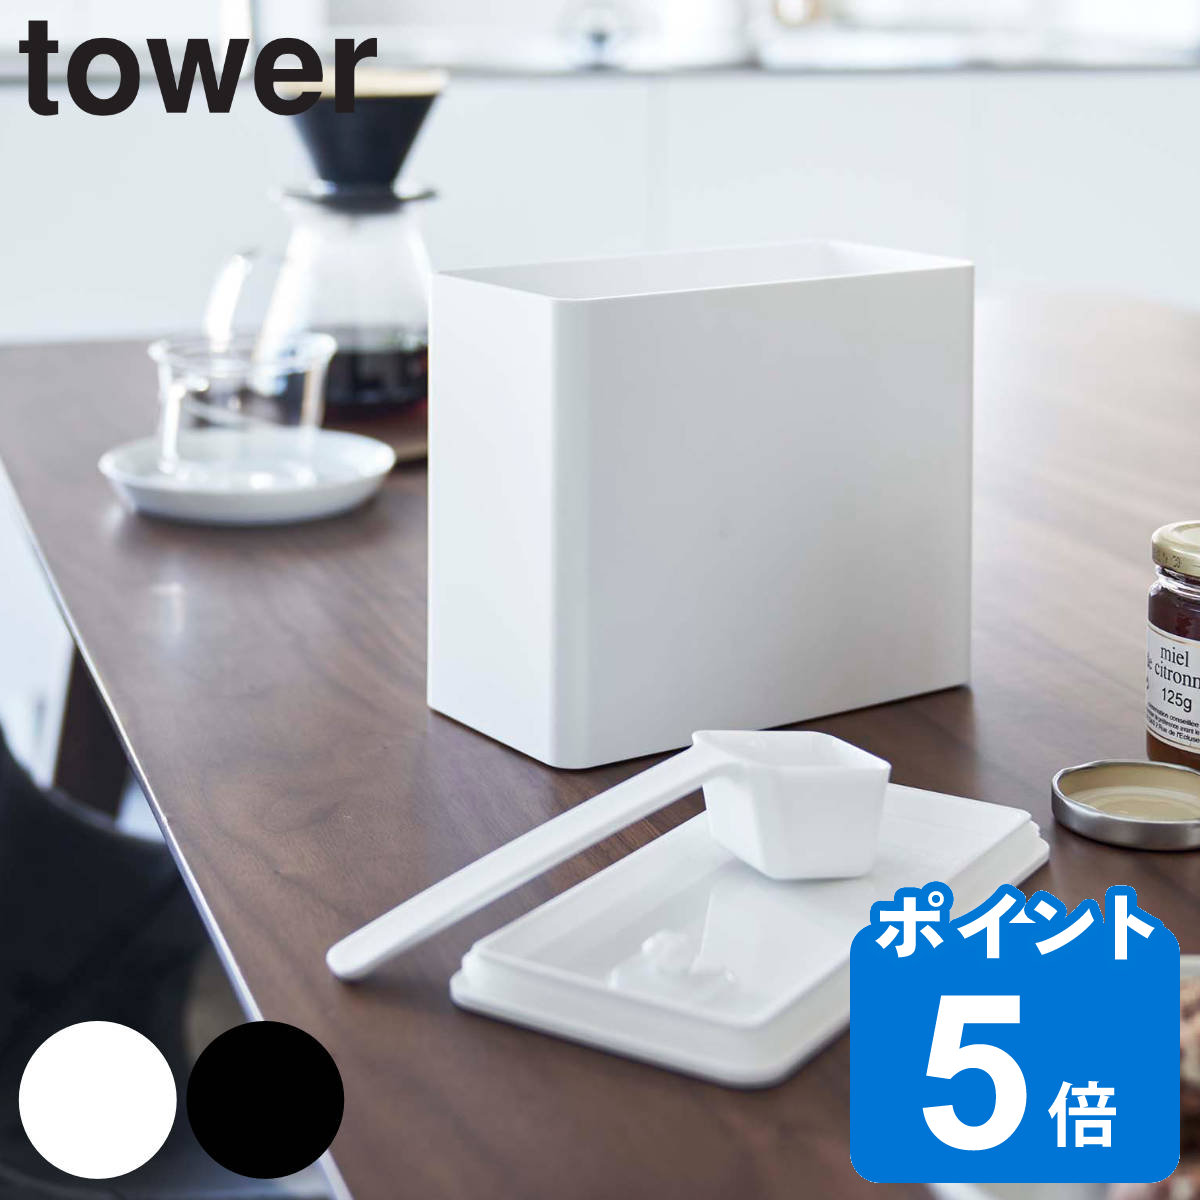 山崎実業 tower バルブ付き密閉コーヒーキャニスター タワー